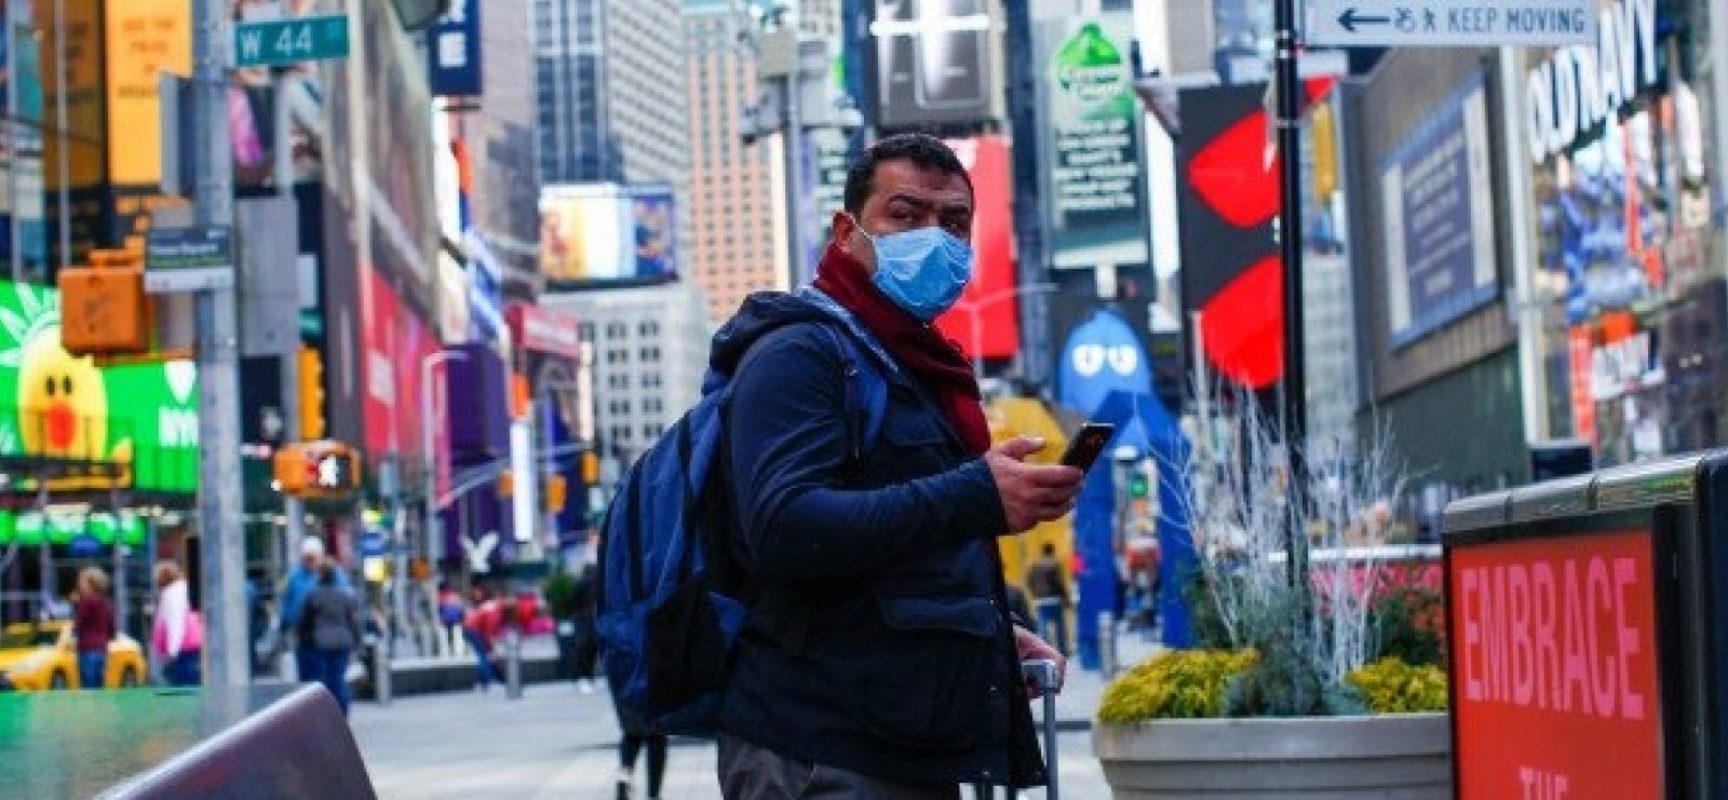 Coronavírus: Nova cepa se espalha por Nova York e já contamina 1 em cada 4, diz estudo